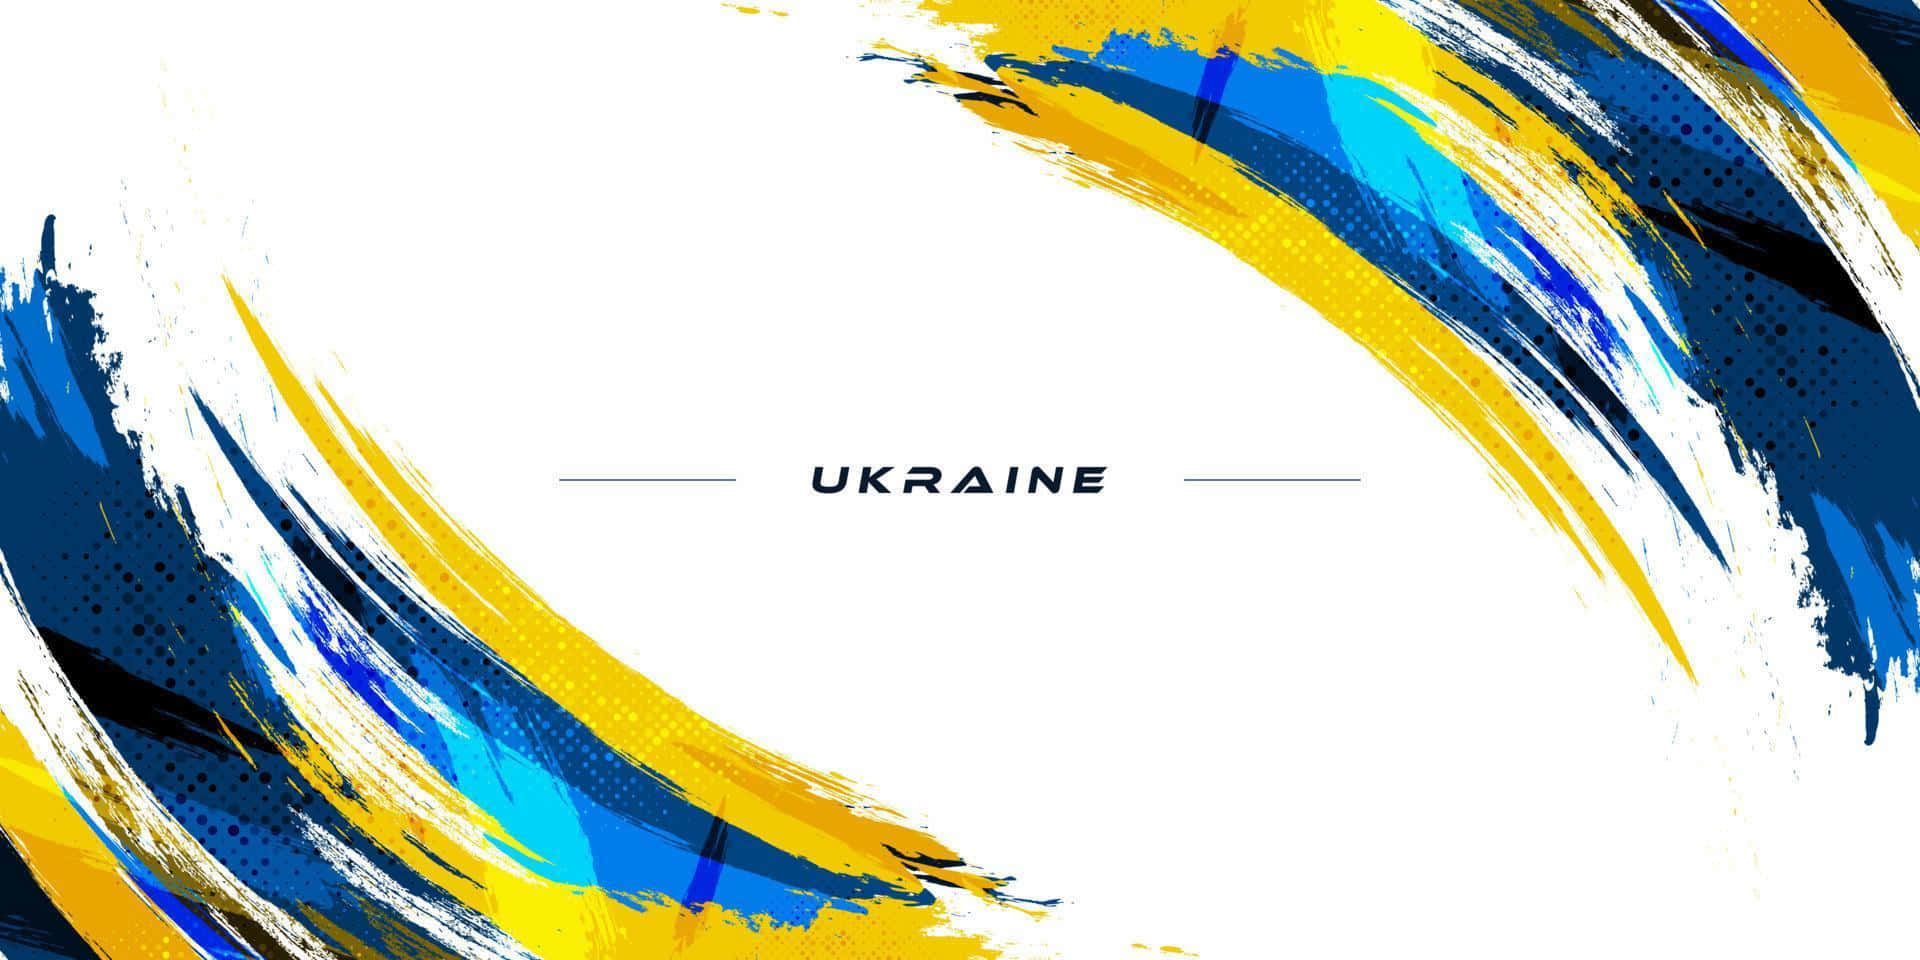 Fredeligelandskaber I Ukraine.